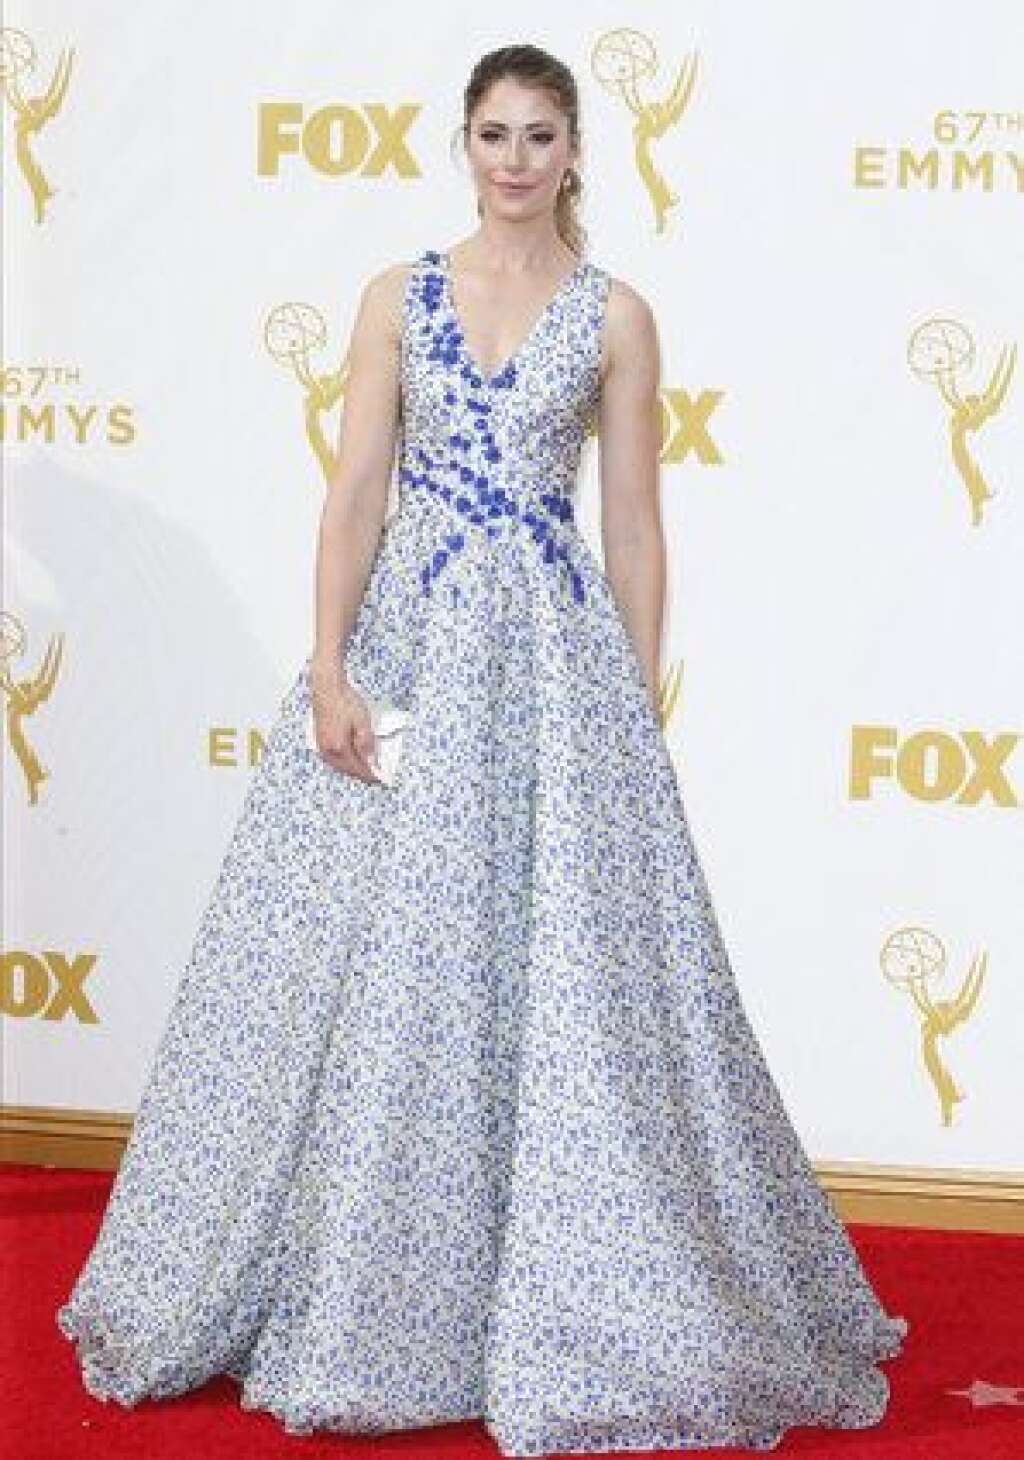 La 67ème cérémonie des Emmy Awards - Amanda Crew (Suits)